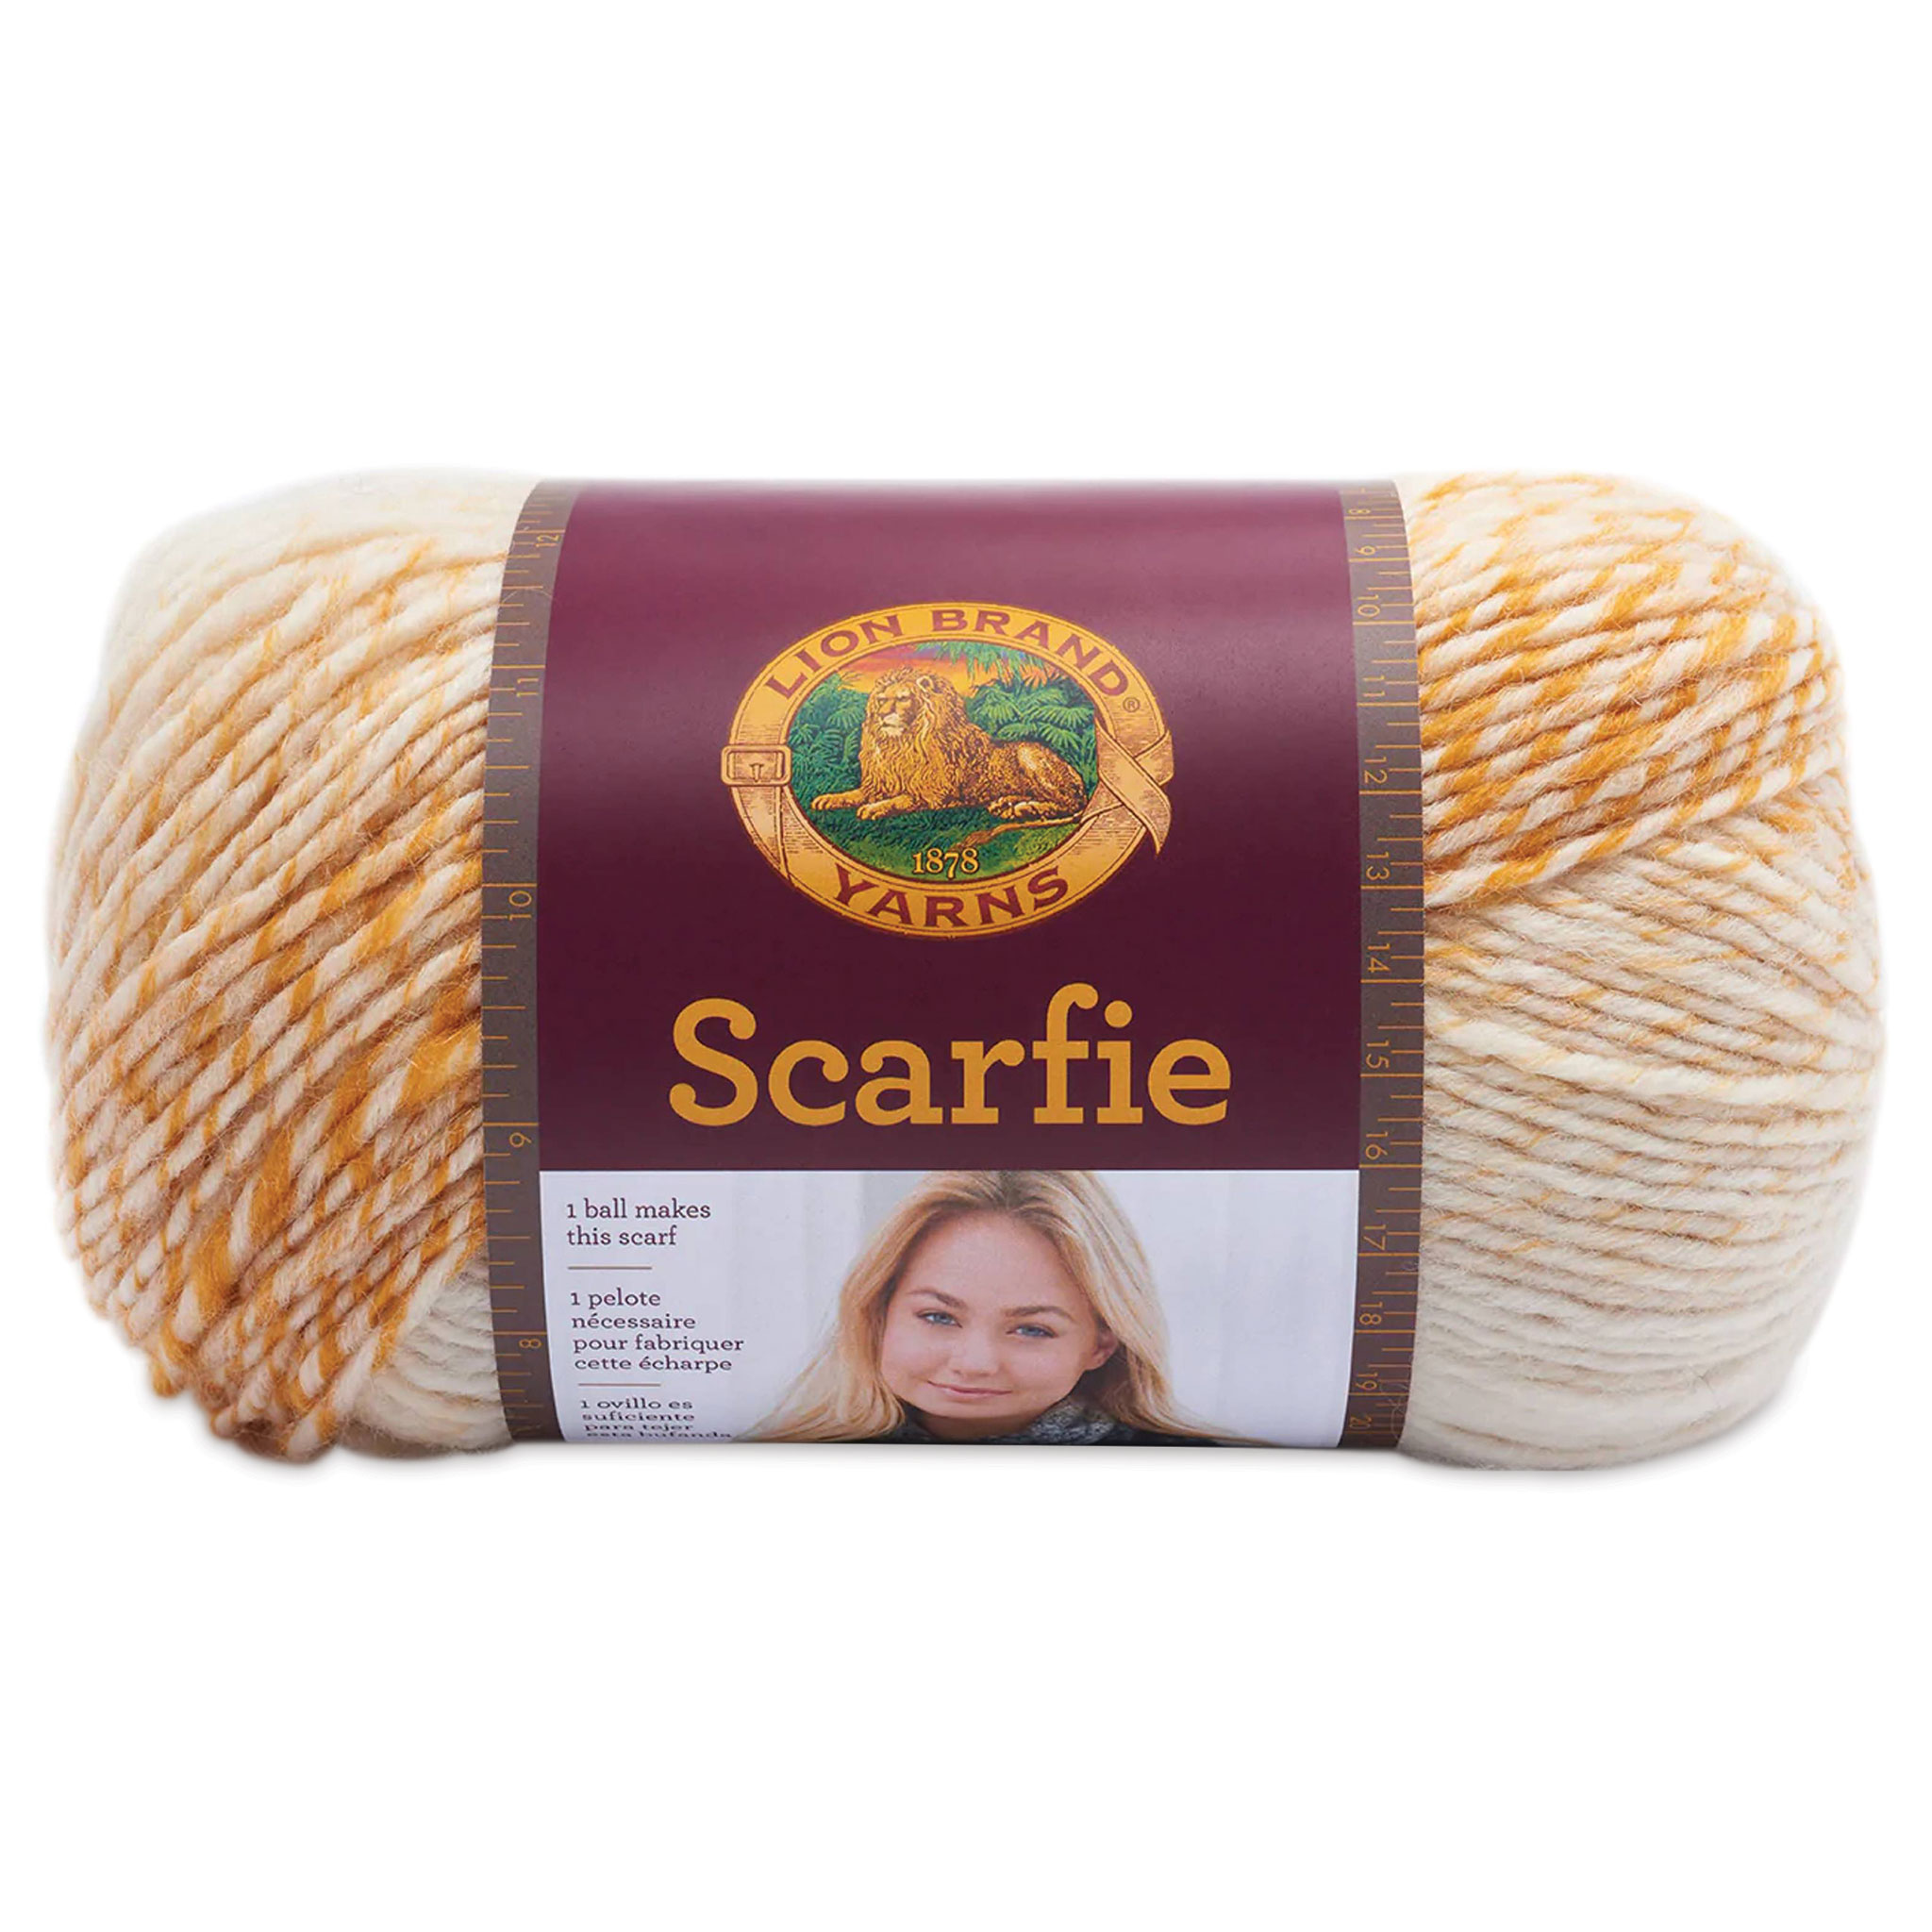 Lion Brand Scarfie Yarn - Claret/Oxford